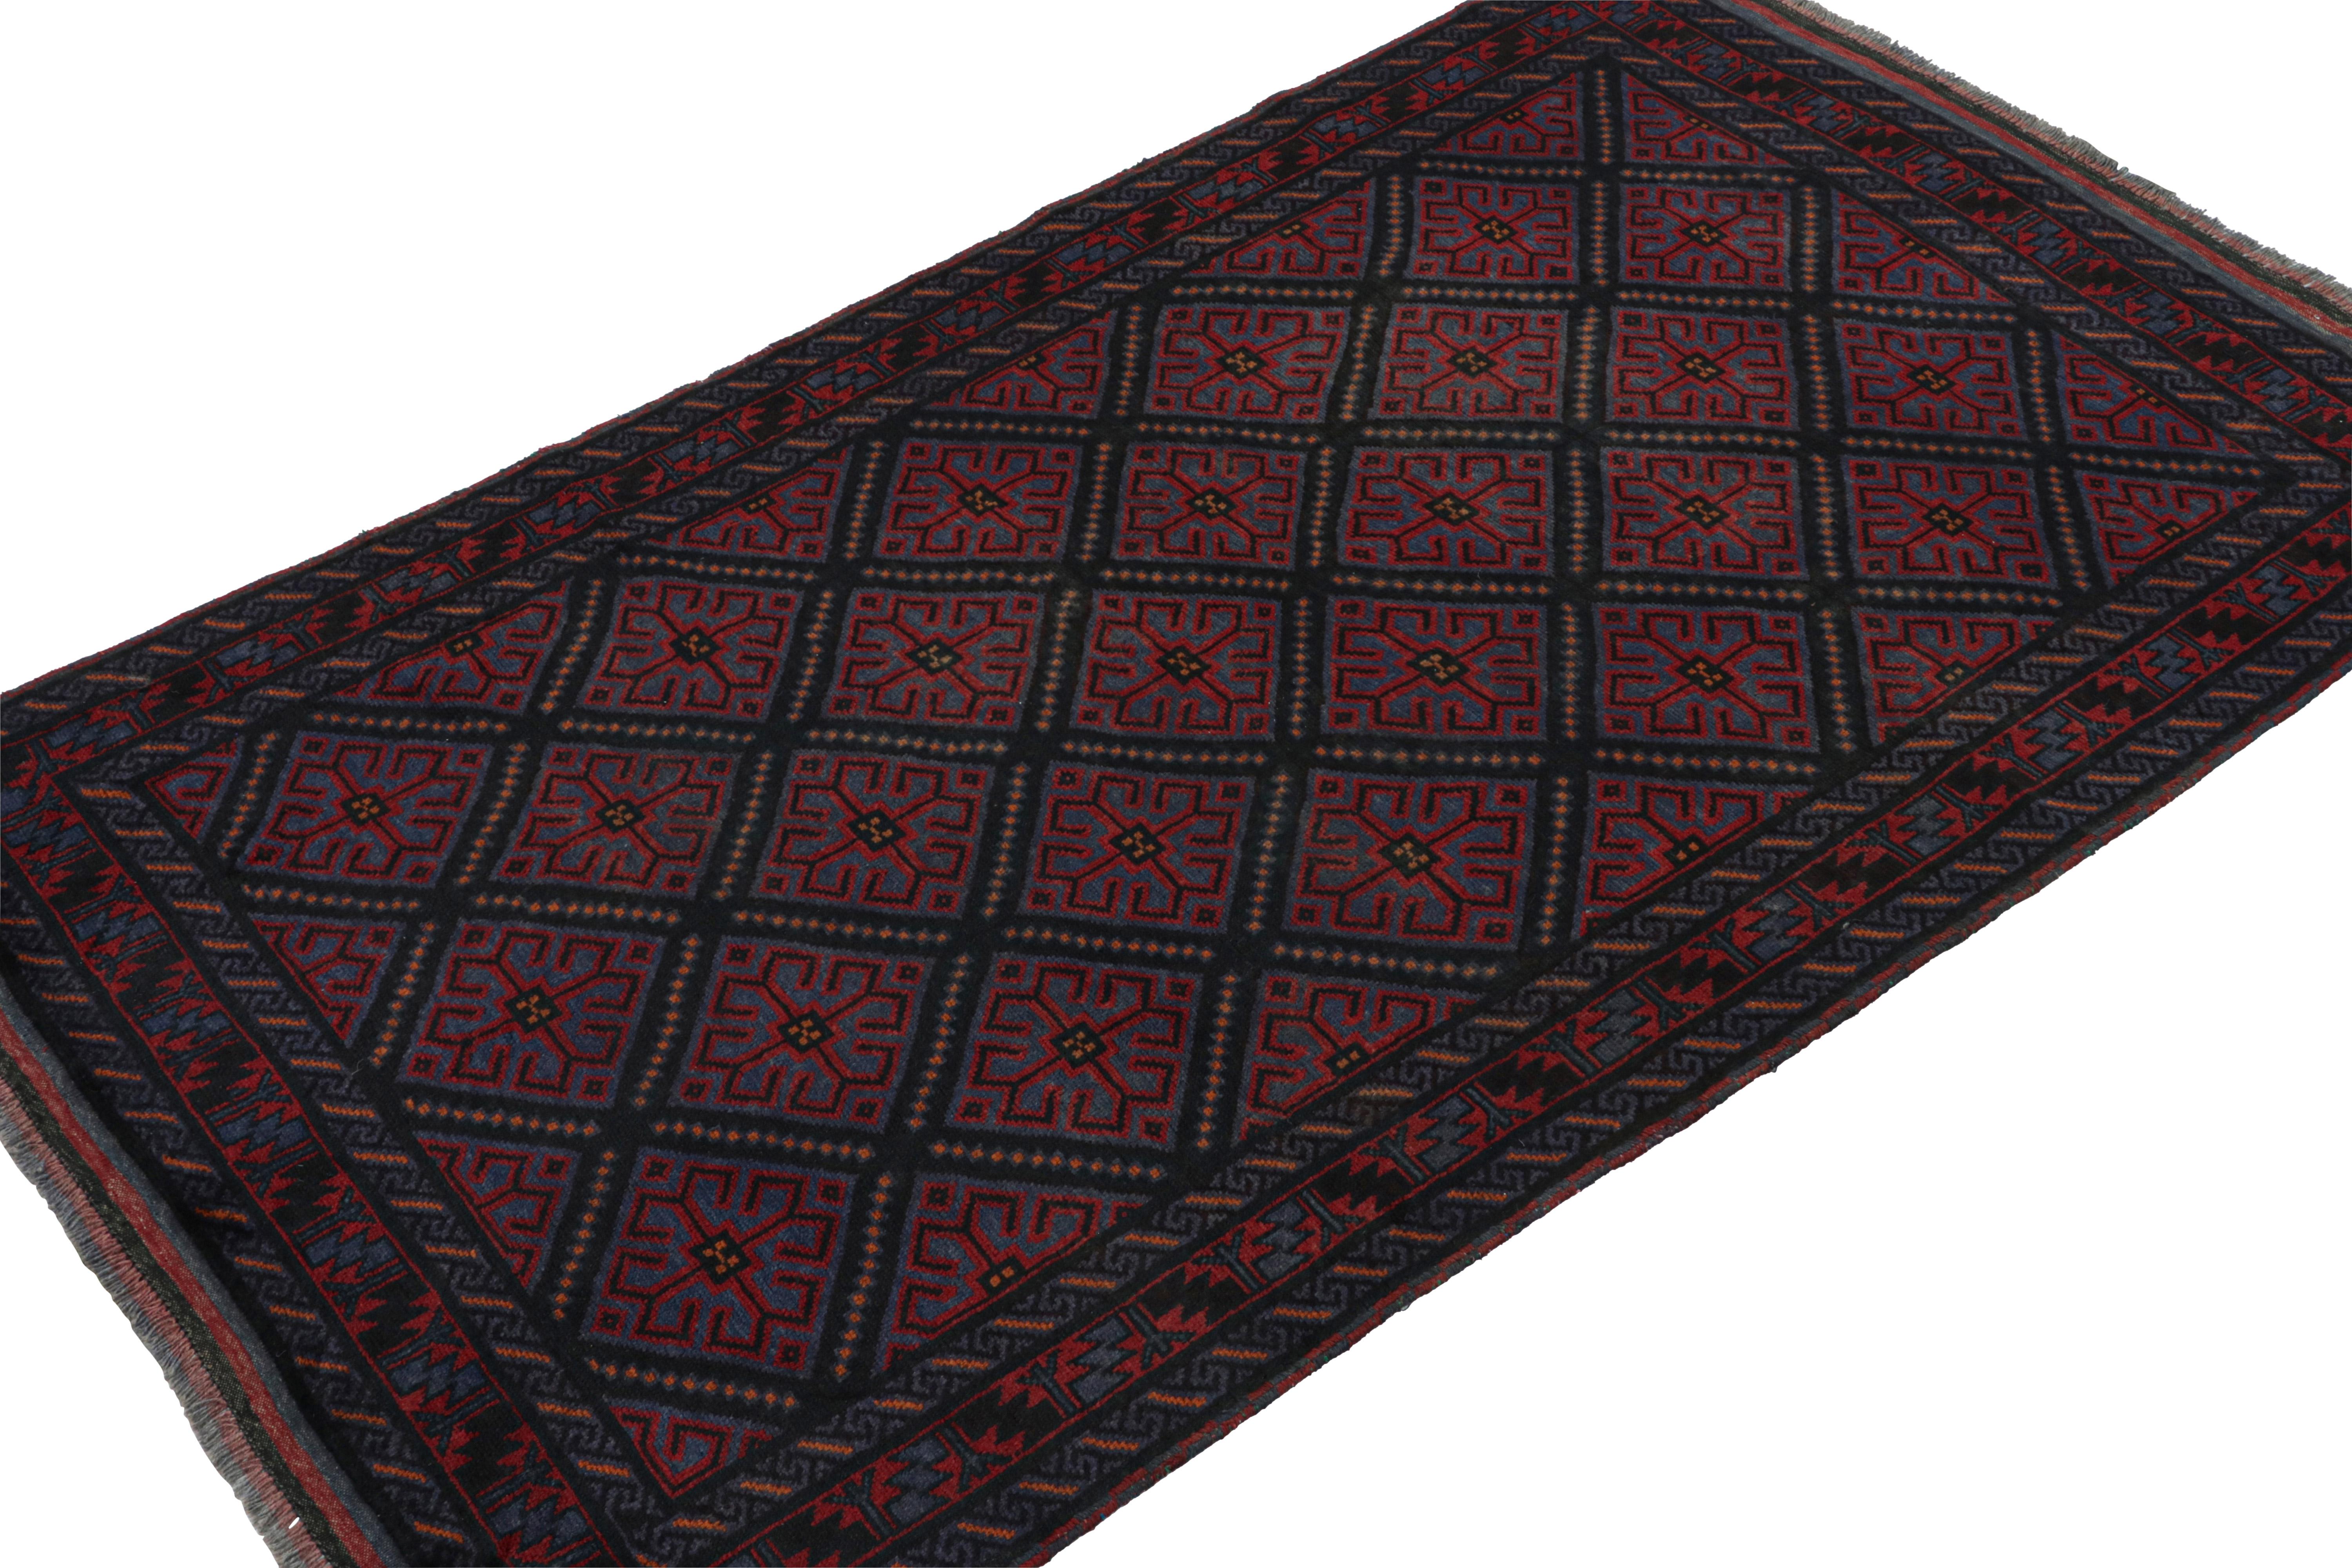 Dieser handgeknüpfte Teppich aus Wolle und Ziegenhaar (ca. 1950-1960) im Format 5 x 8 ist eine neue Kuration von Rug & Kilim. 

Über das Design: 

Dieser Läufer besticht durch marineblaue und indigofarbene Untertöne, rote geometrische Muster und